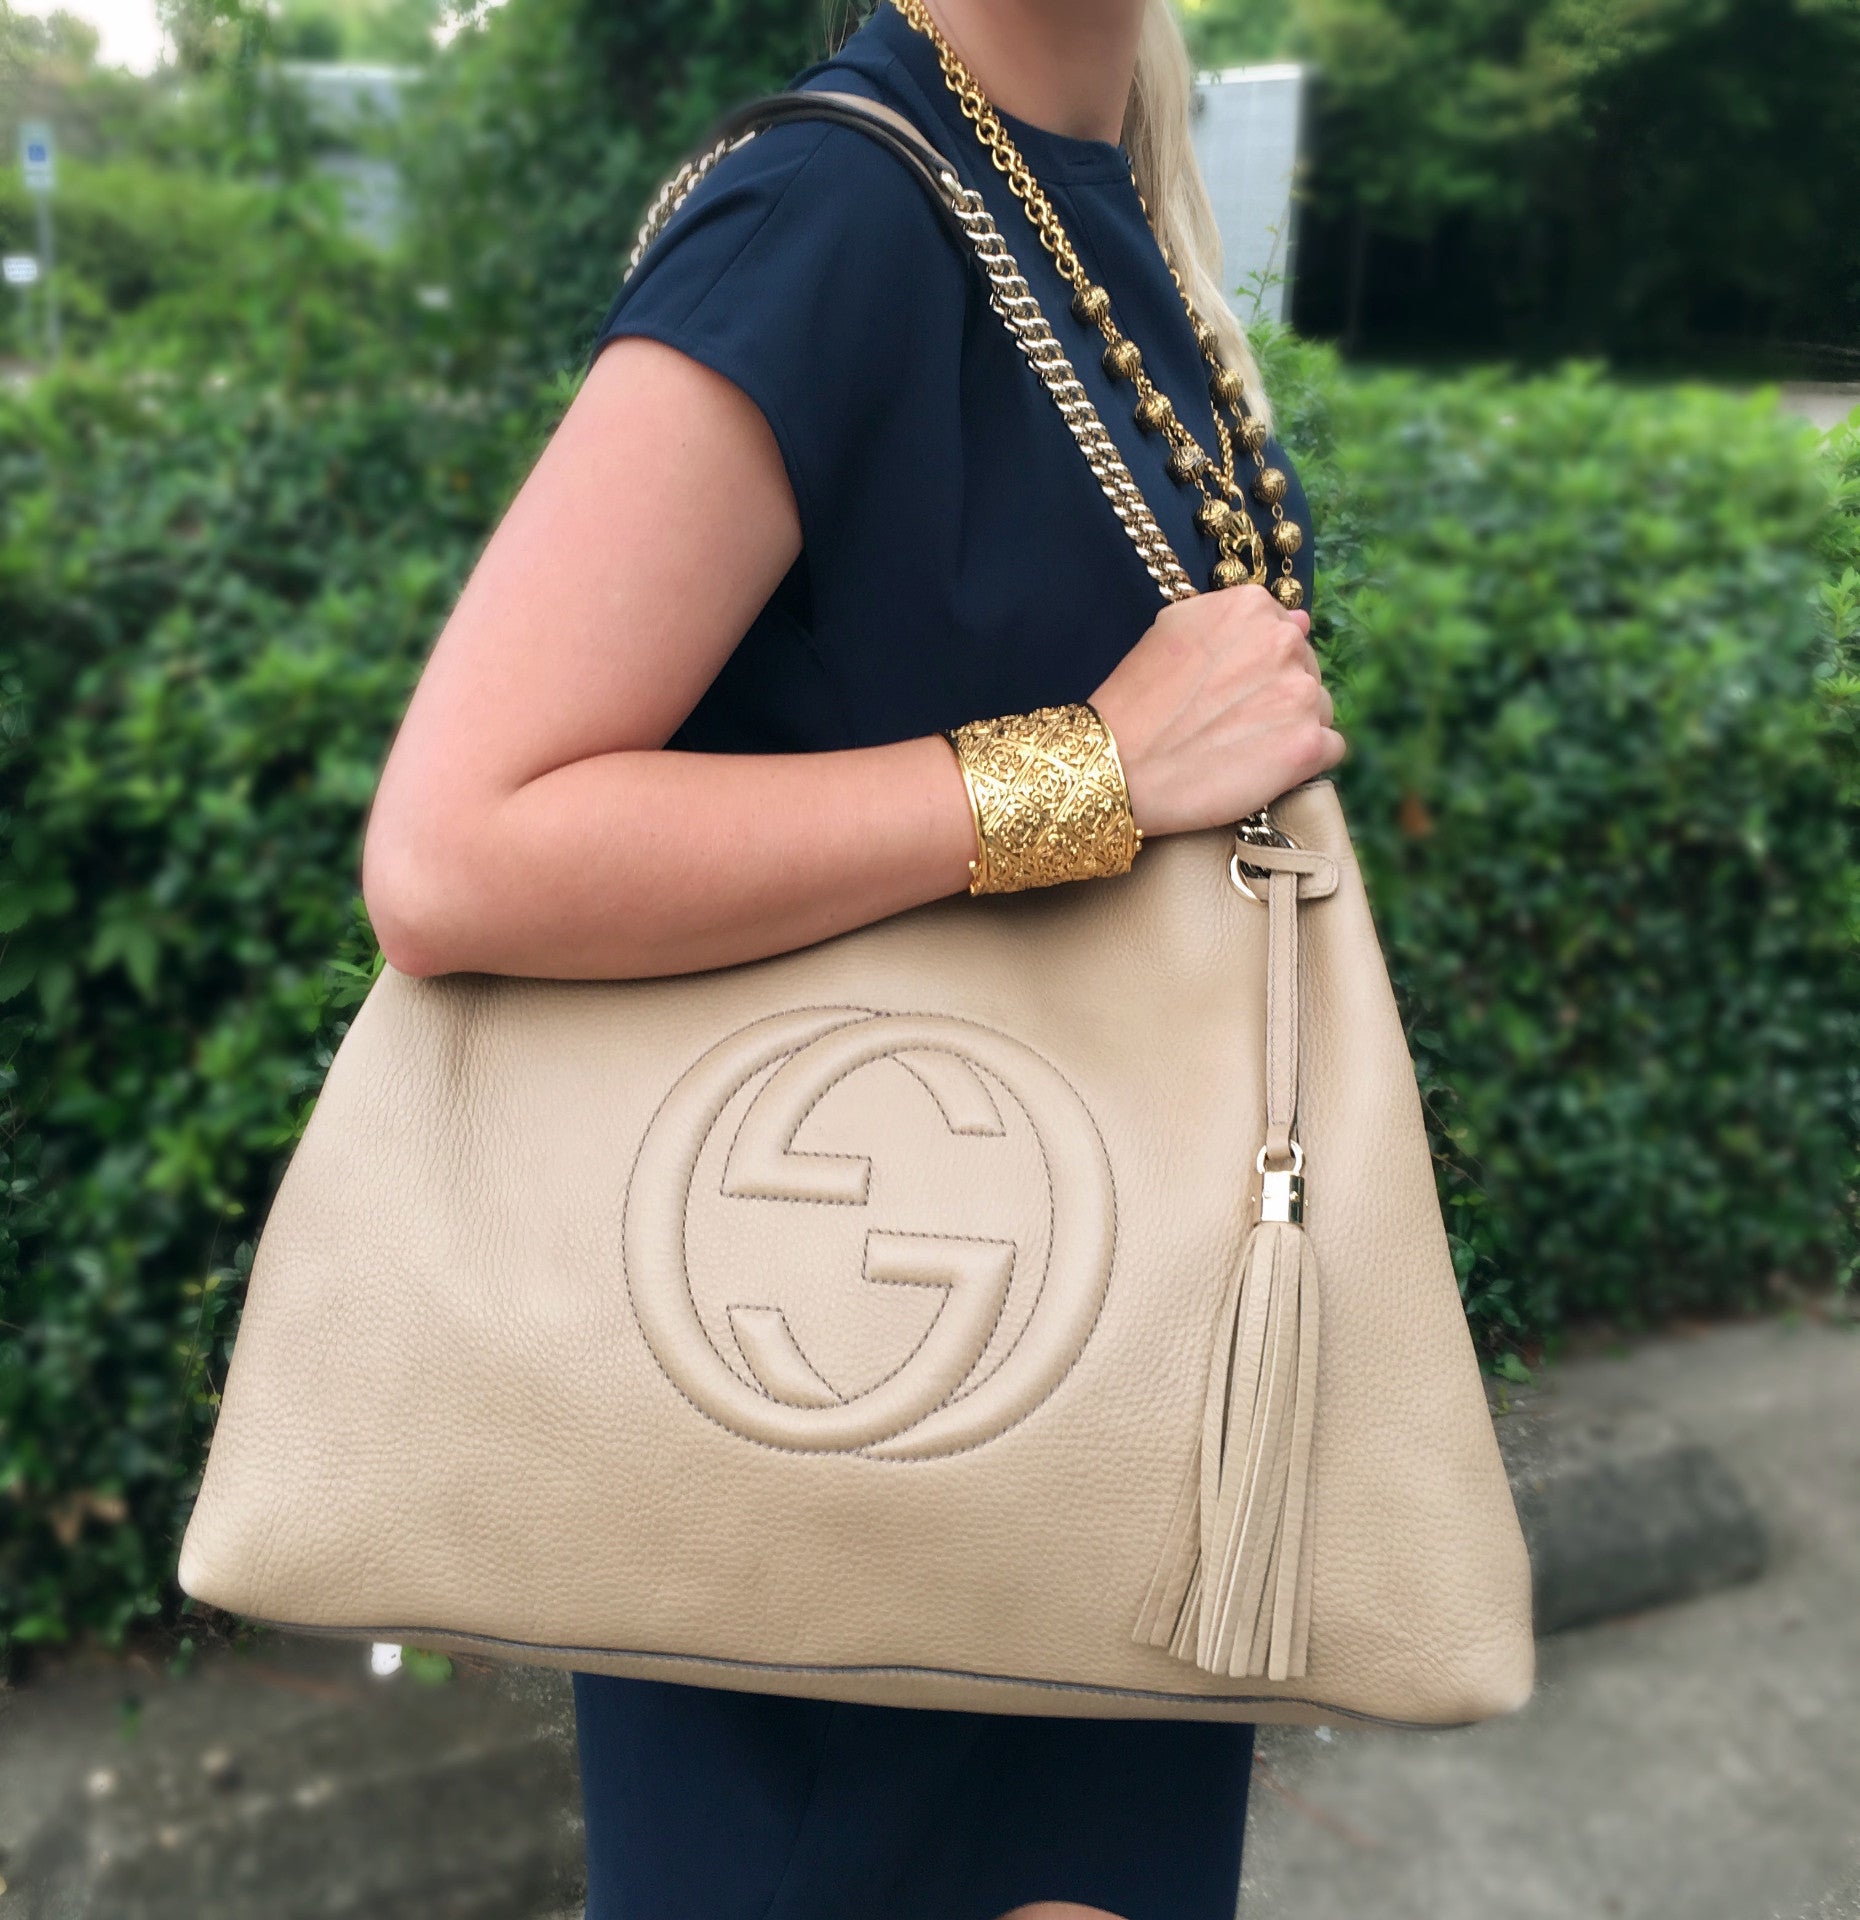 Gucci Soho Tote Bag Review 